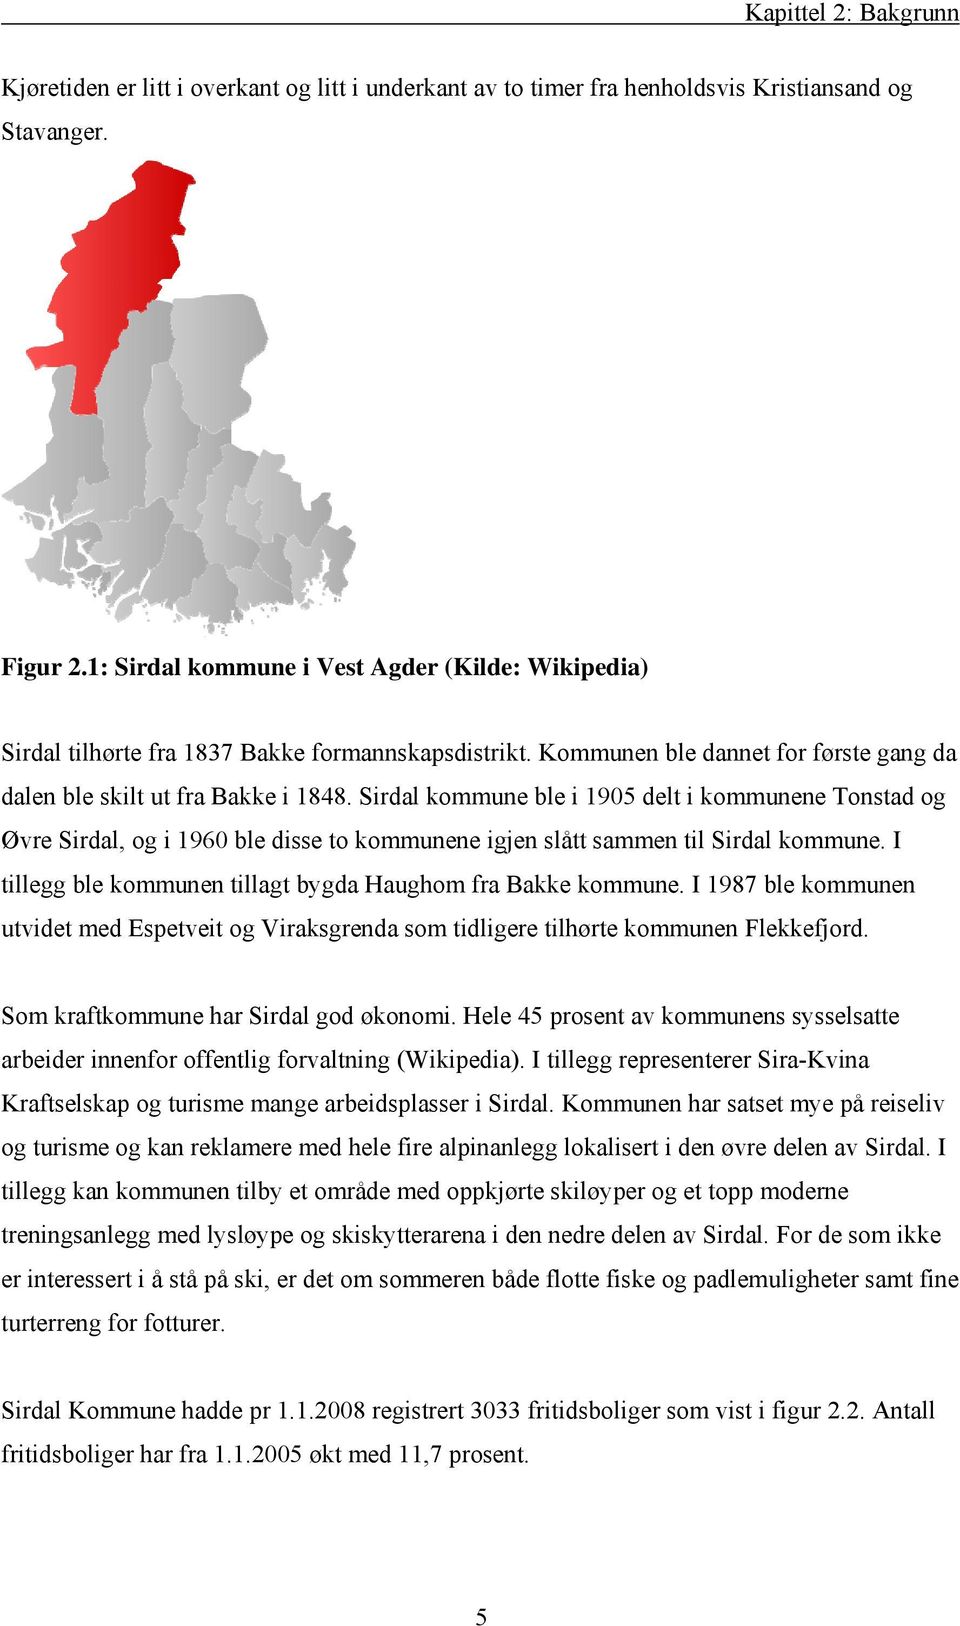 Sirdal kommune ble i 905 delt i kommunene Tonstad og Øvre Sirdal, og i 960 ble disse to kommunene igjen slått sammen til Sirdal kommune. I tillegg ble kommunen tillagt bygda Haughom fra Bakke kommune.